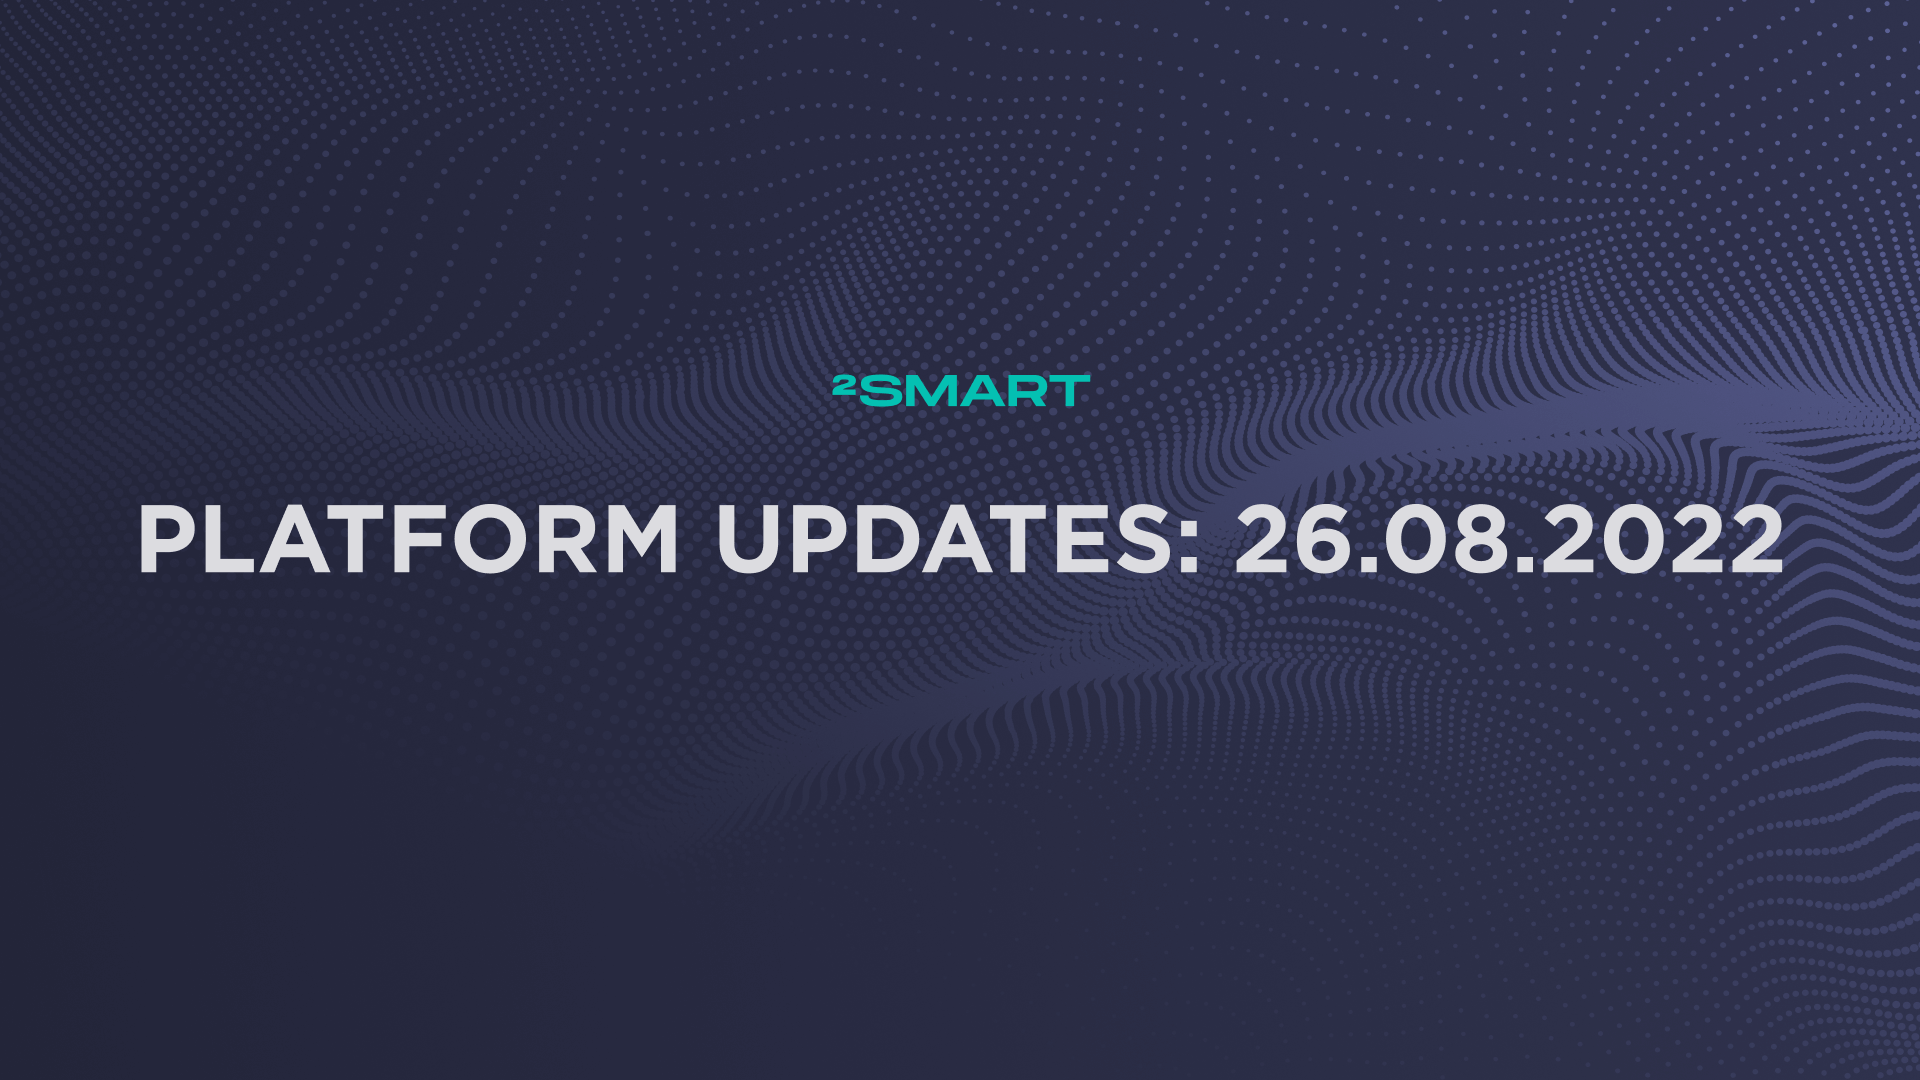 Platform updates: 26.08.2022